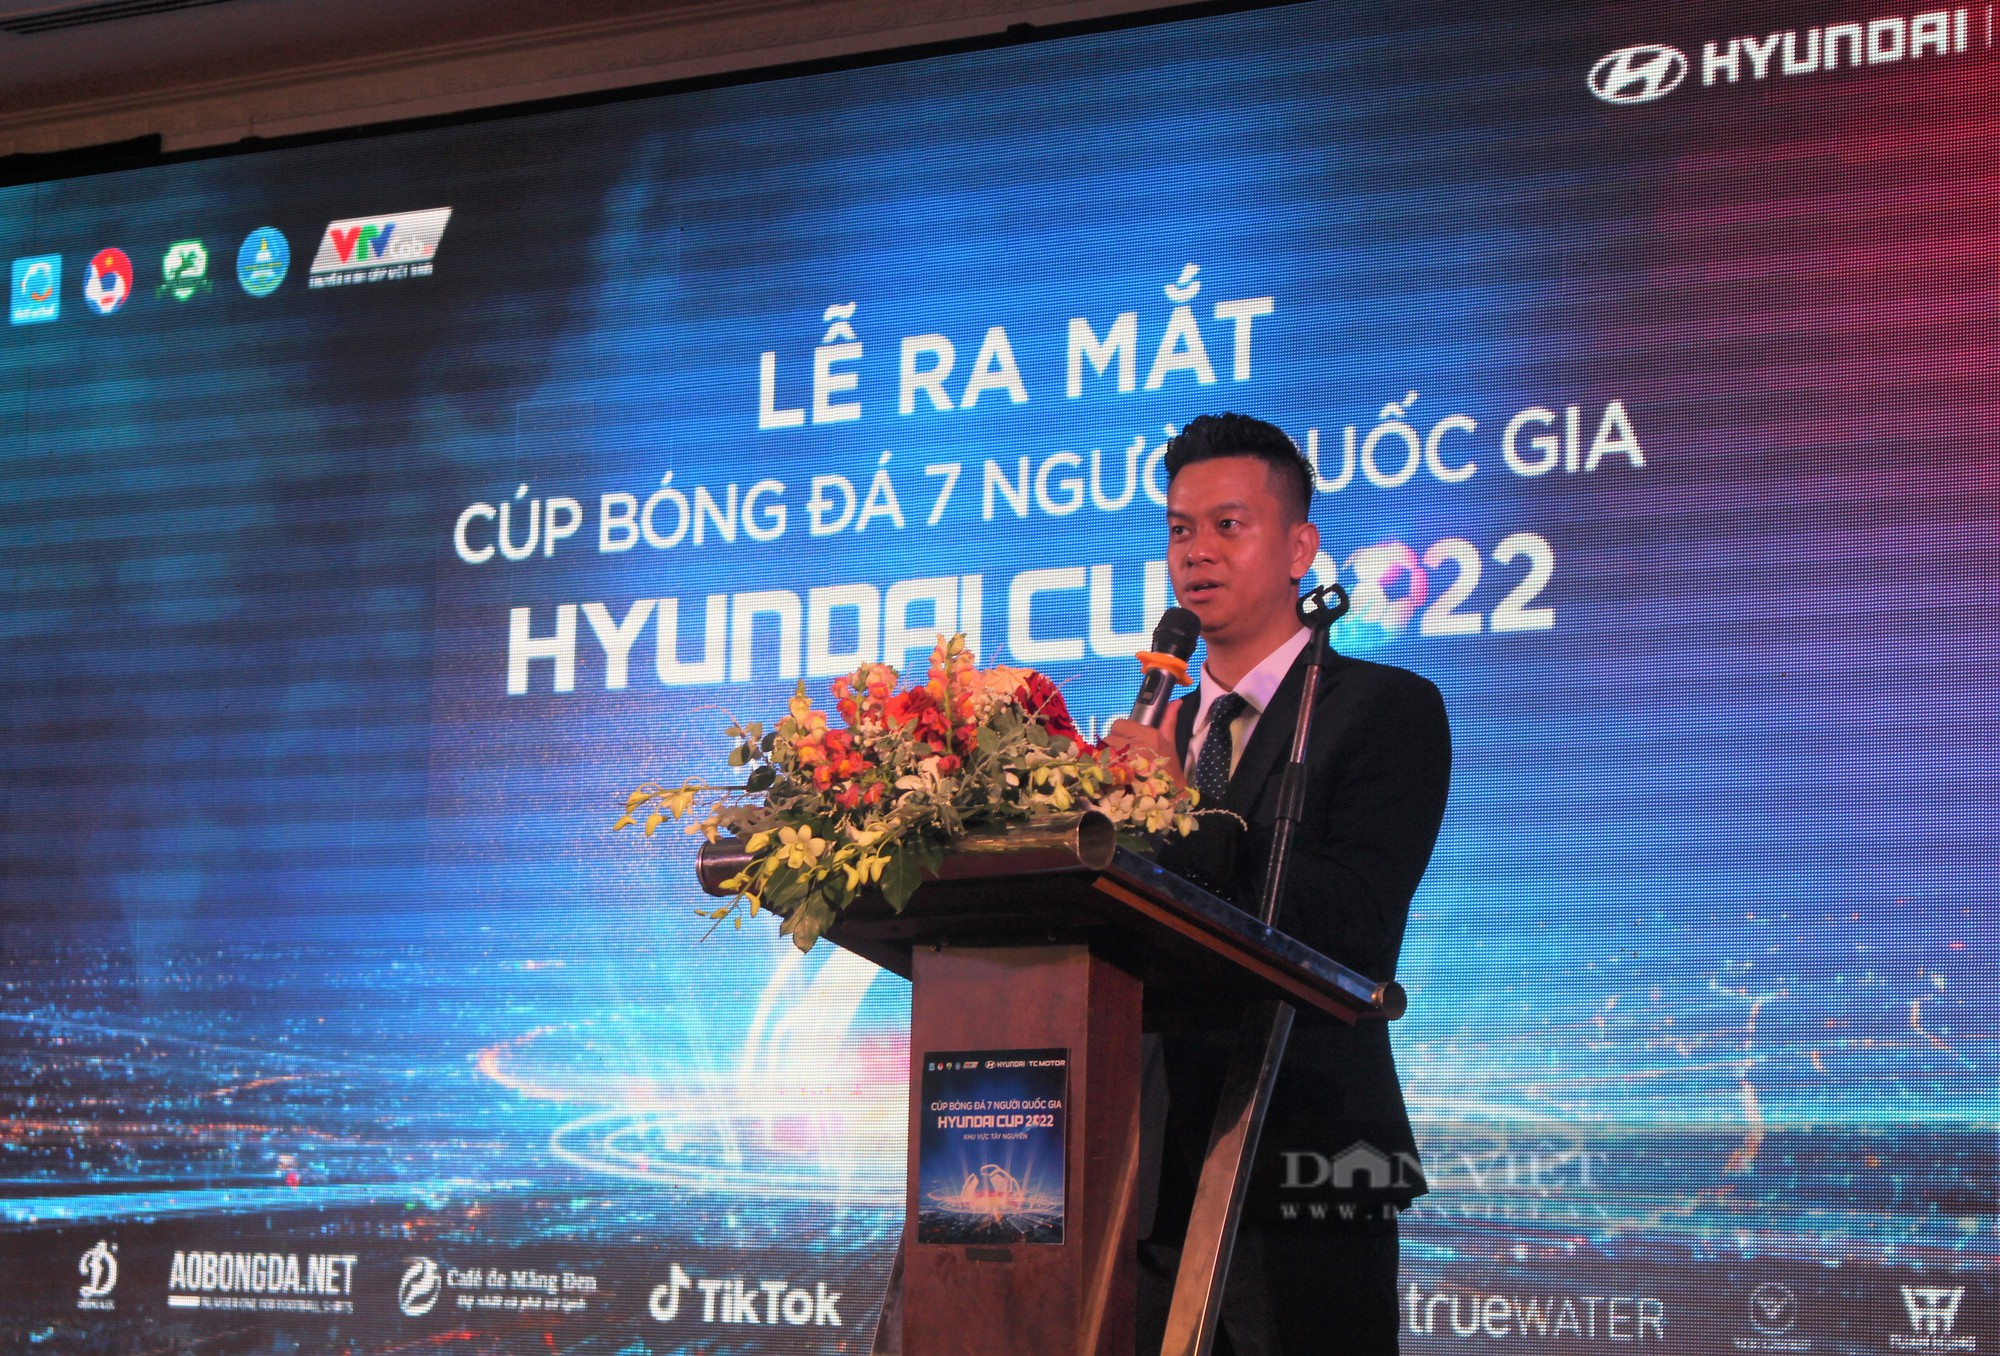 Ra mắt Cup bóng đá 7 người quốc gia Huyndai Cup 2022 khu vực Tây Nguyên - Ảnh 2.